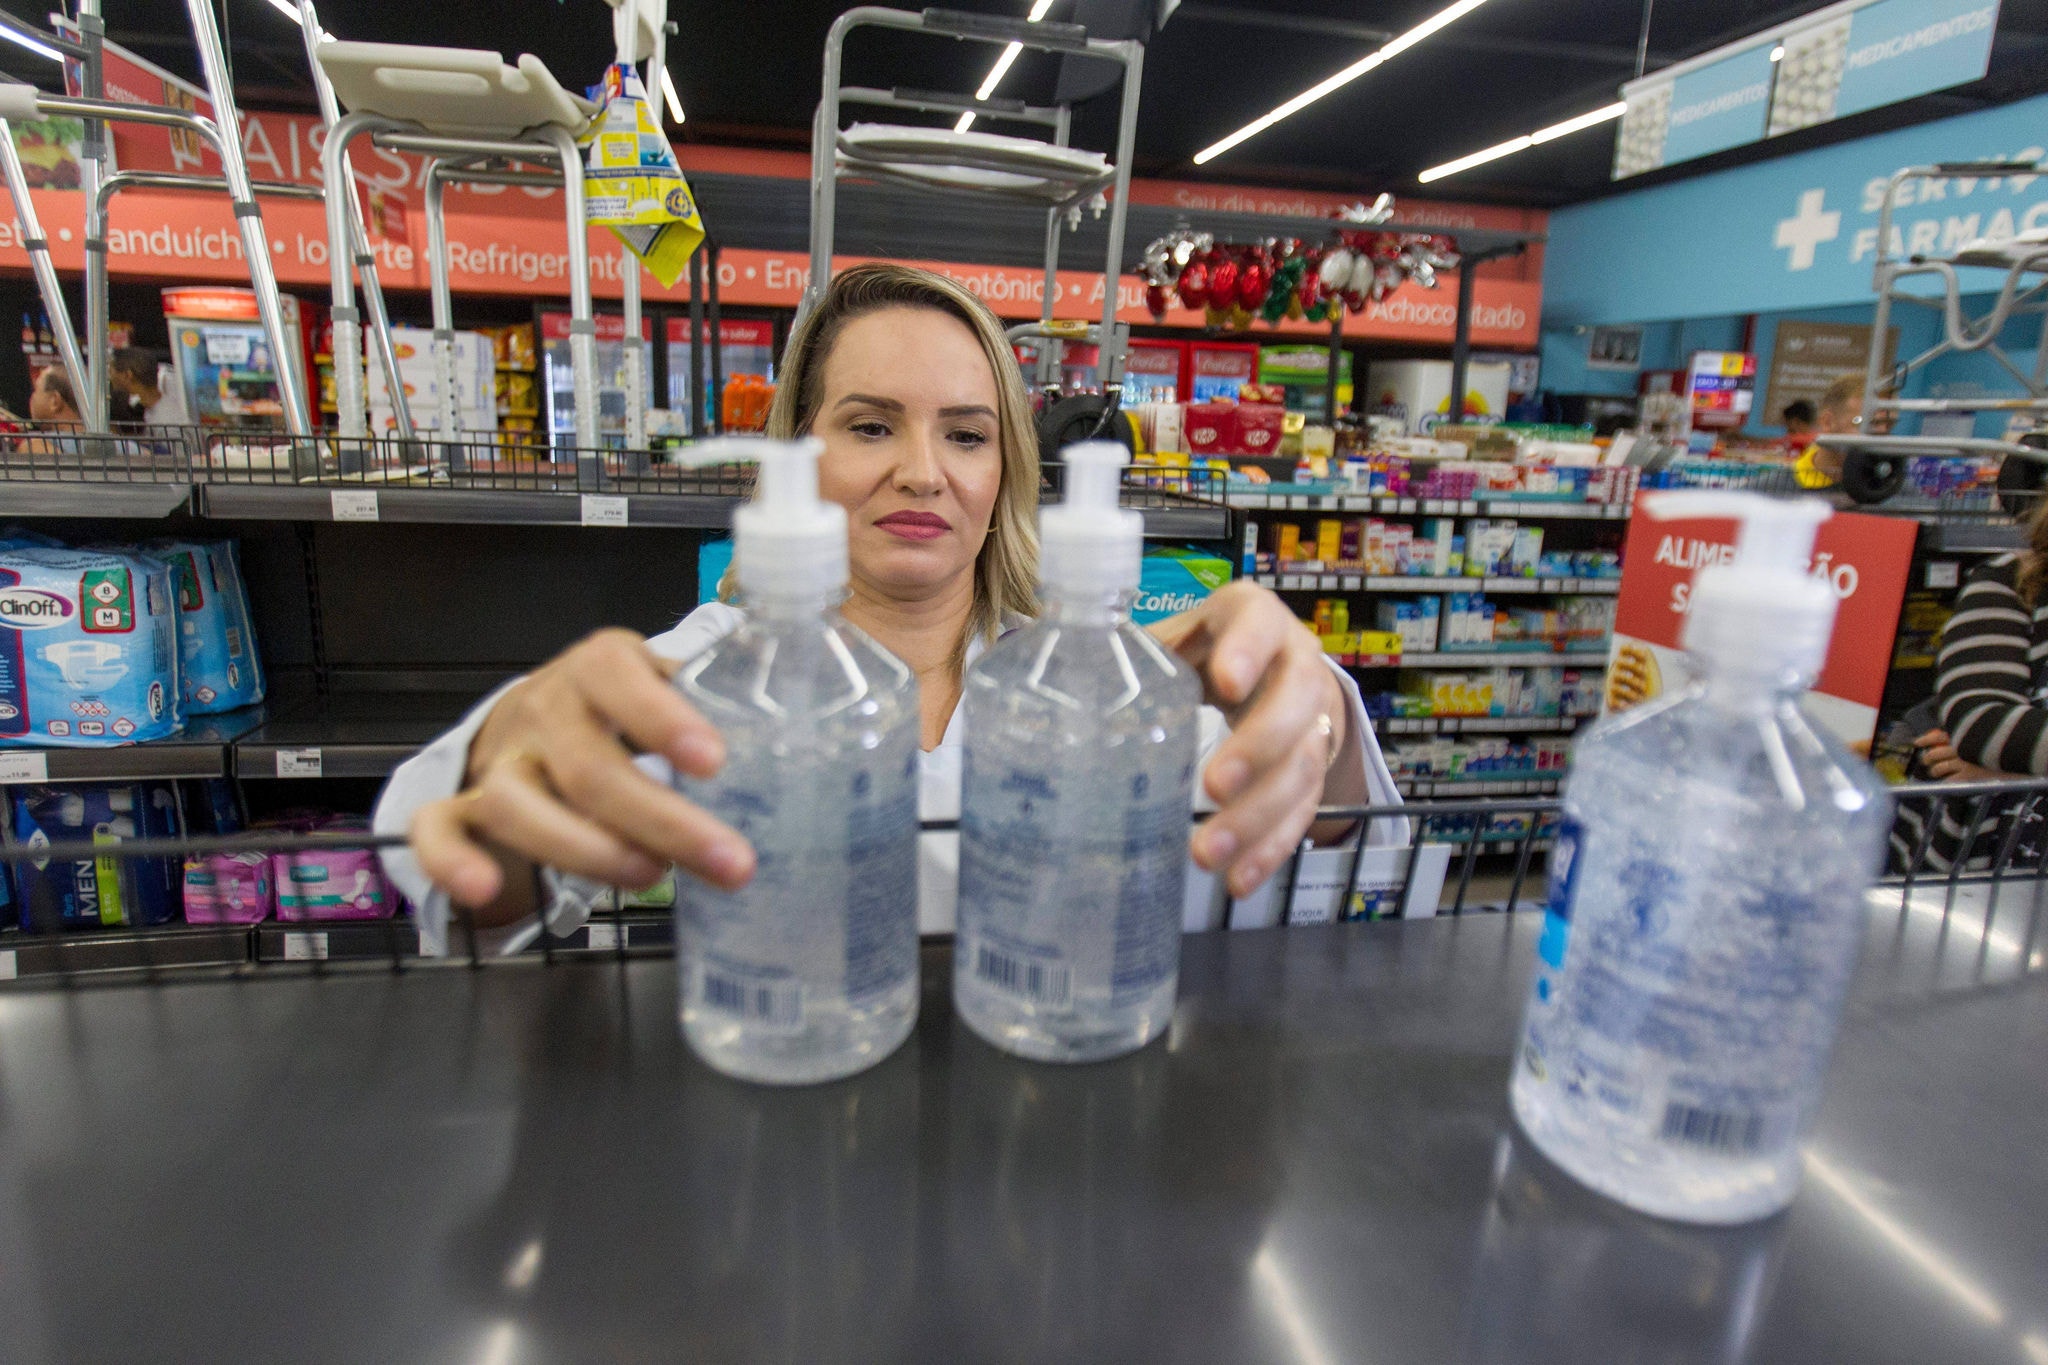 Vidros maiores de álcool em gel já começam a faltar nas farmácias de Belo Horizonte devido à grande procura